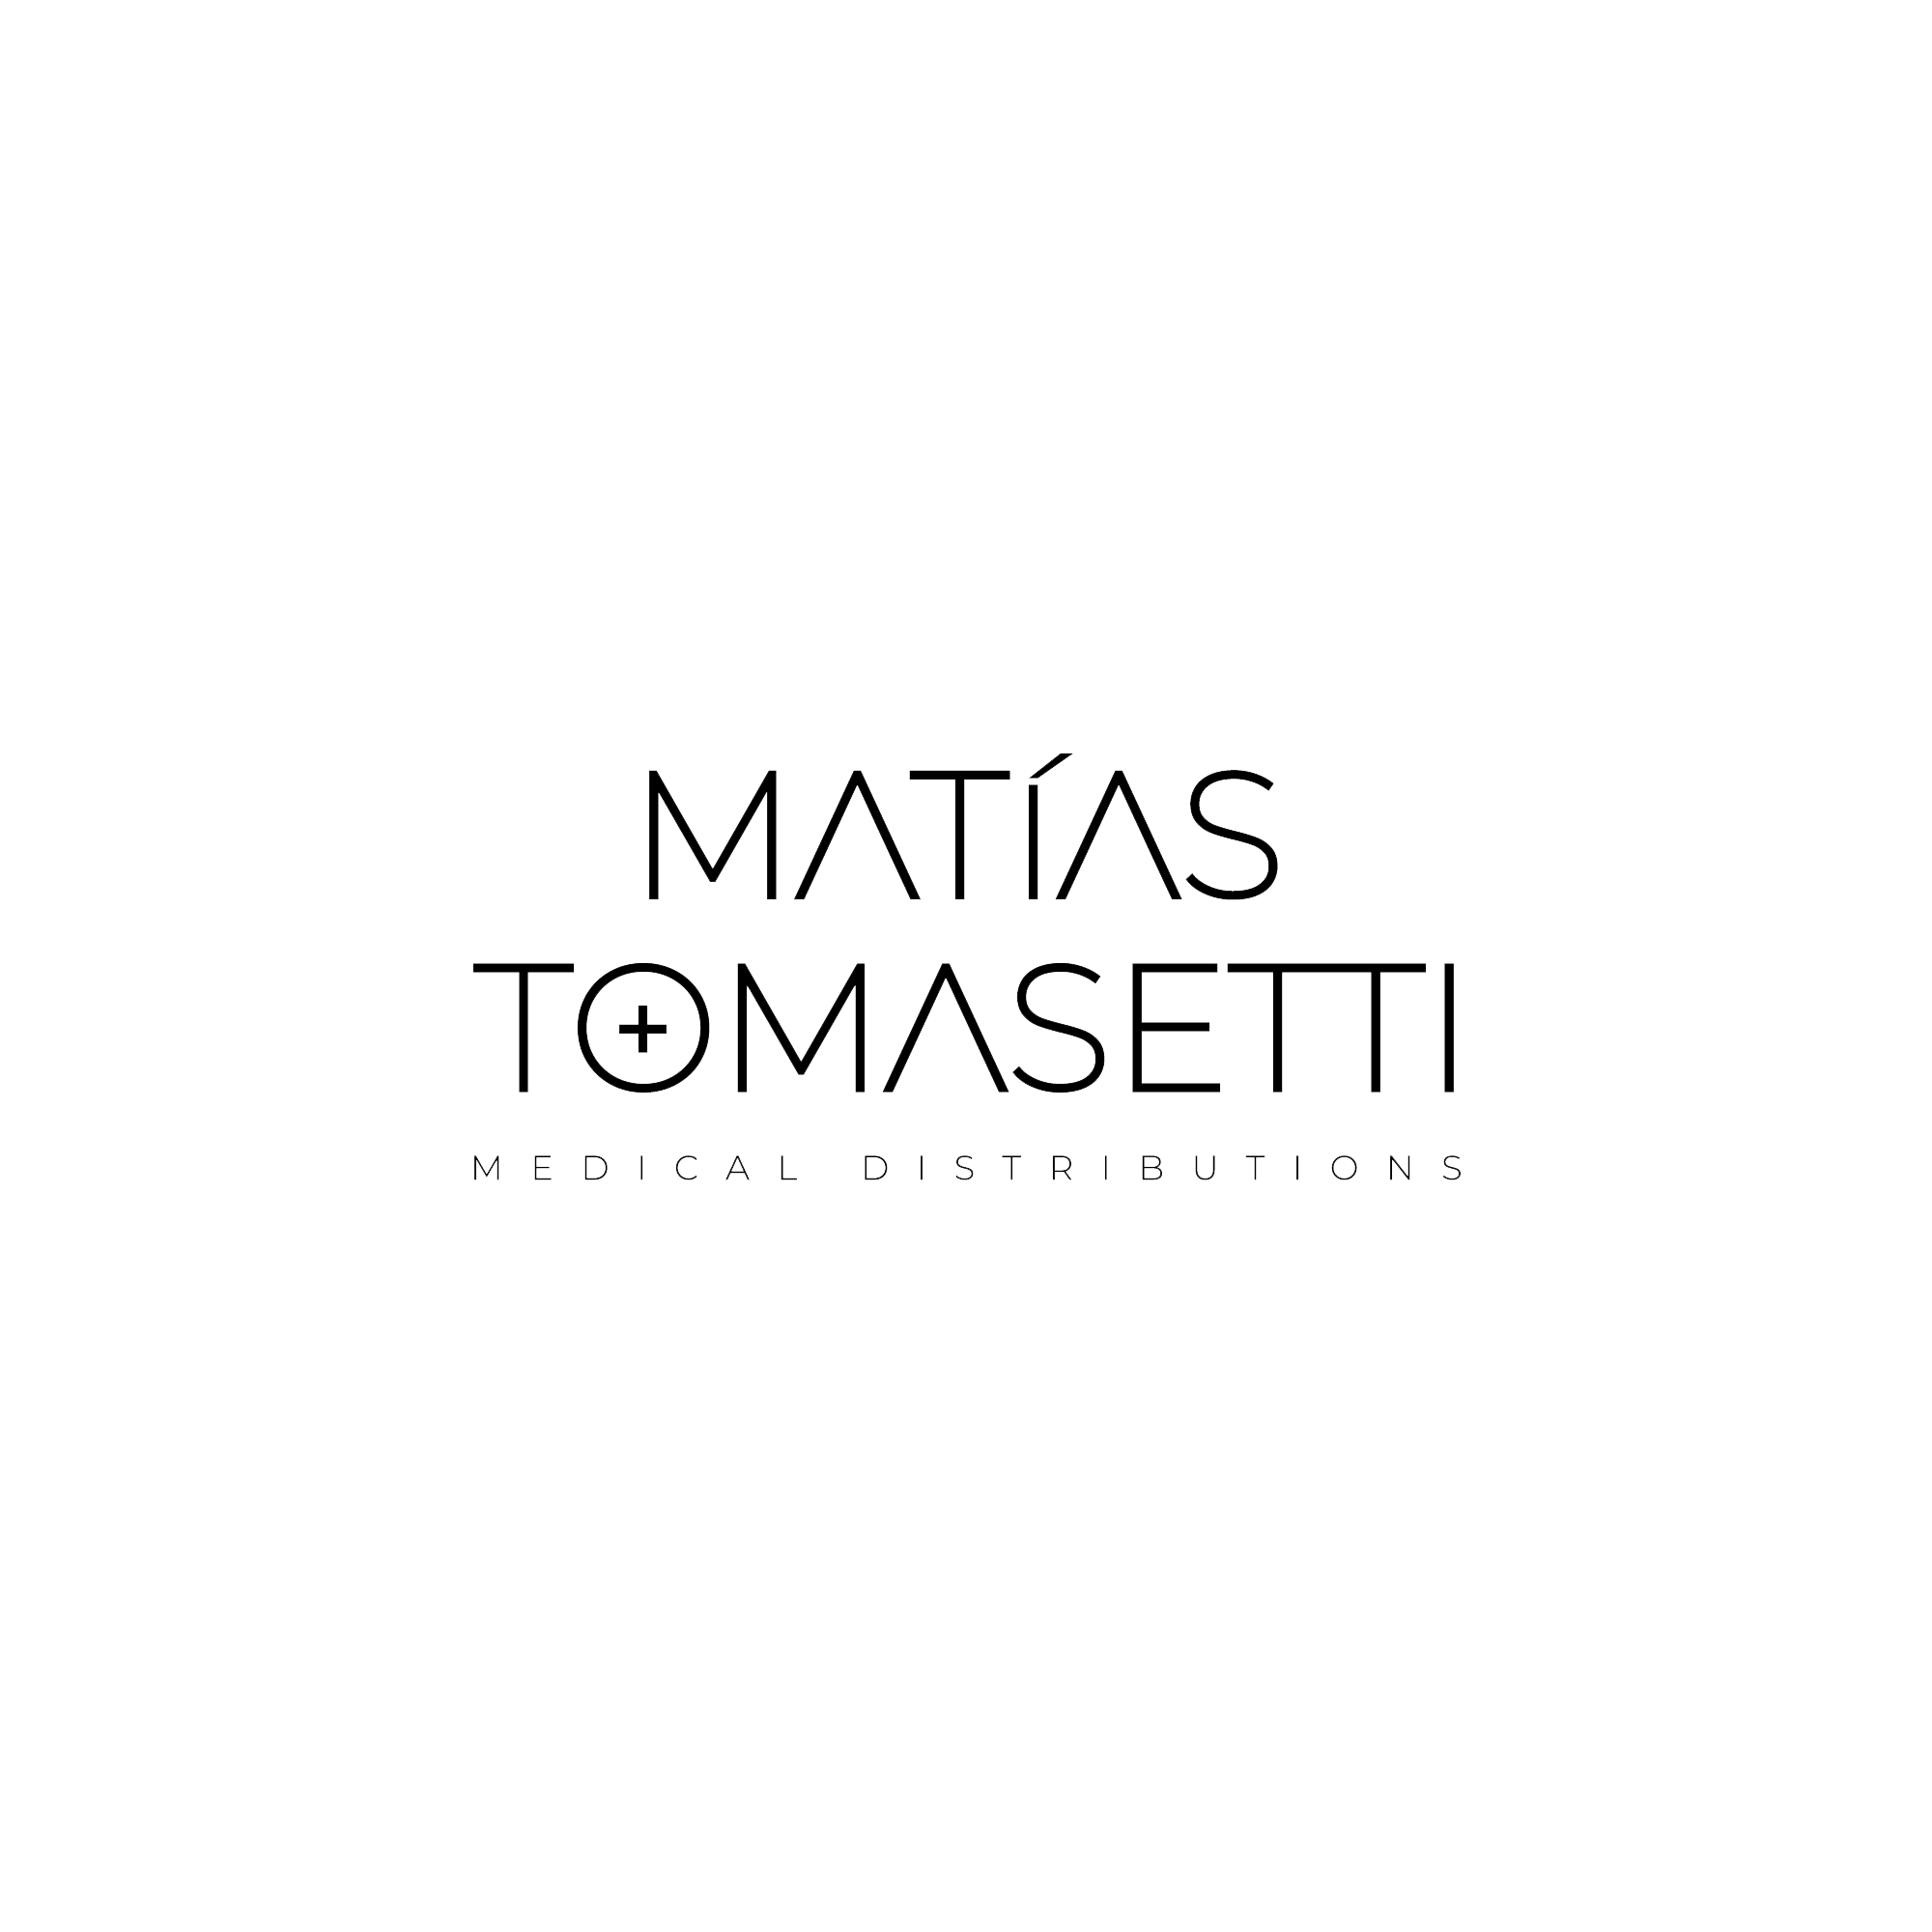 MATIAS TOMASETTI